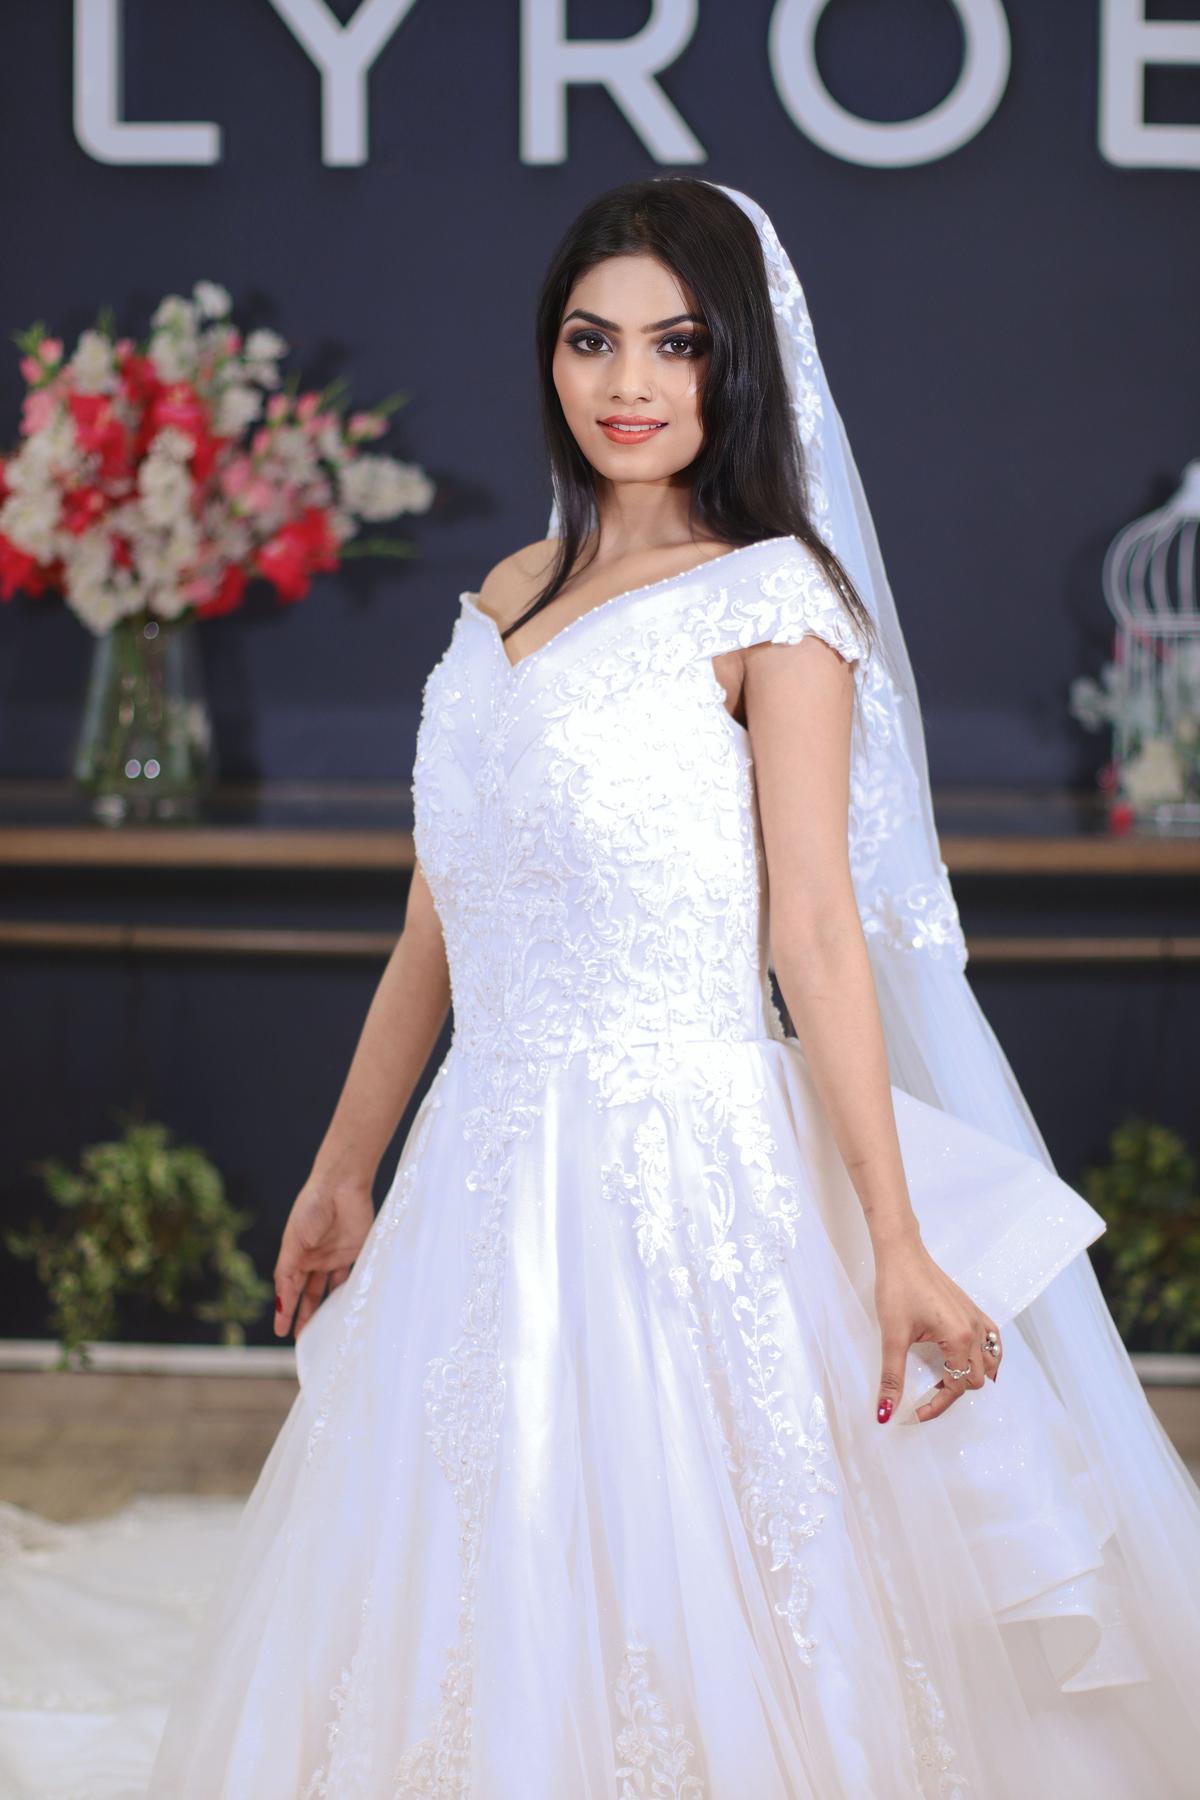 Shop For Christian Wedding Gowns For White Wedding |LBB Pune-megaelearning.vn